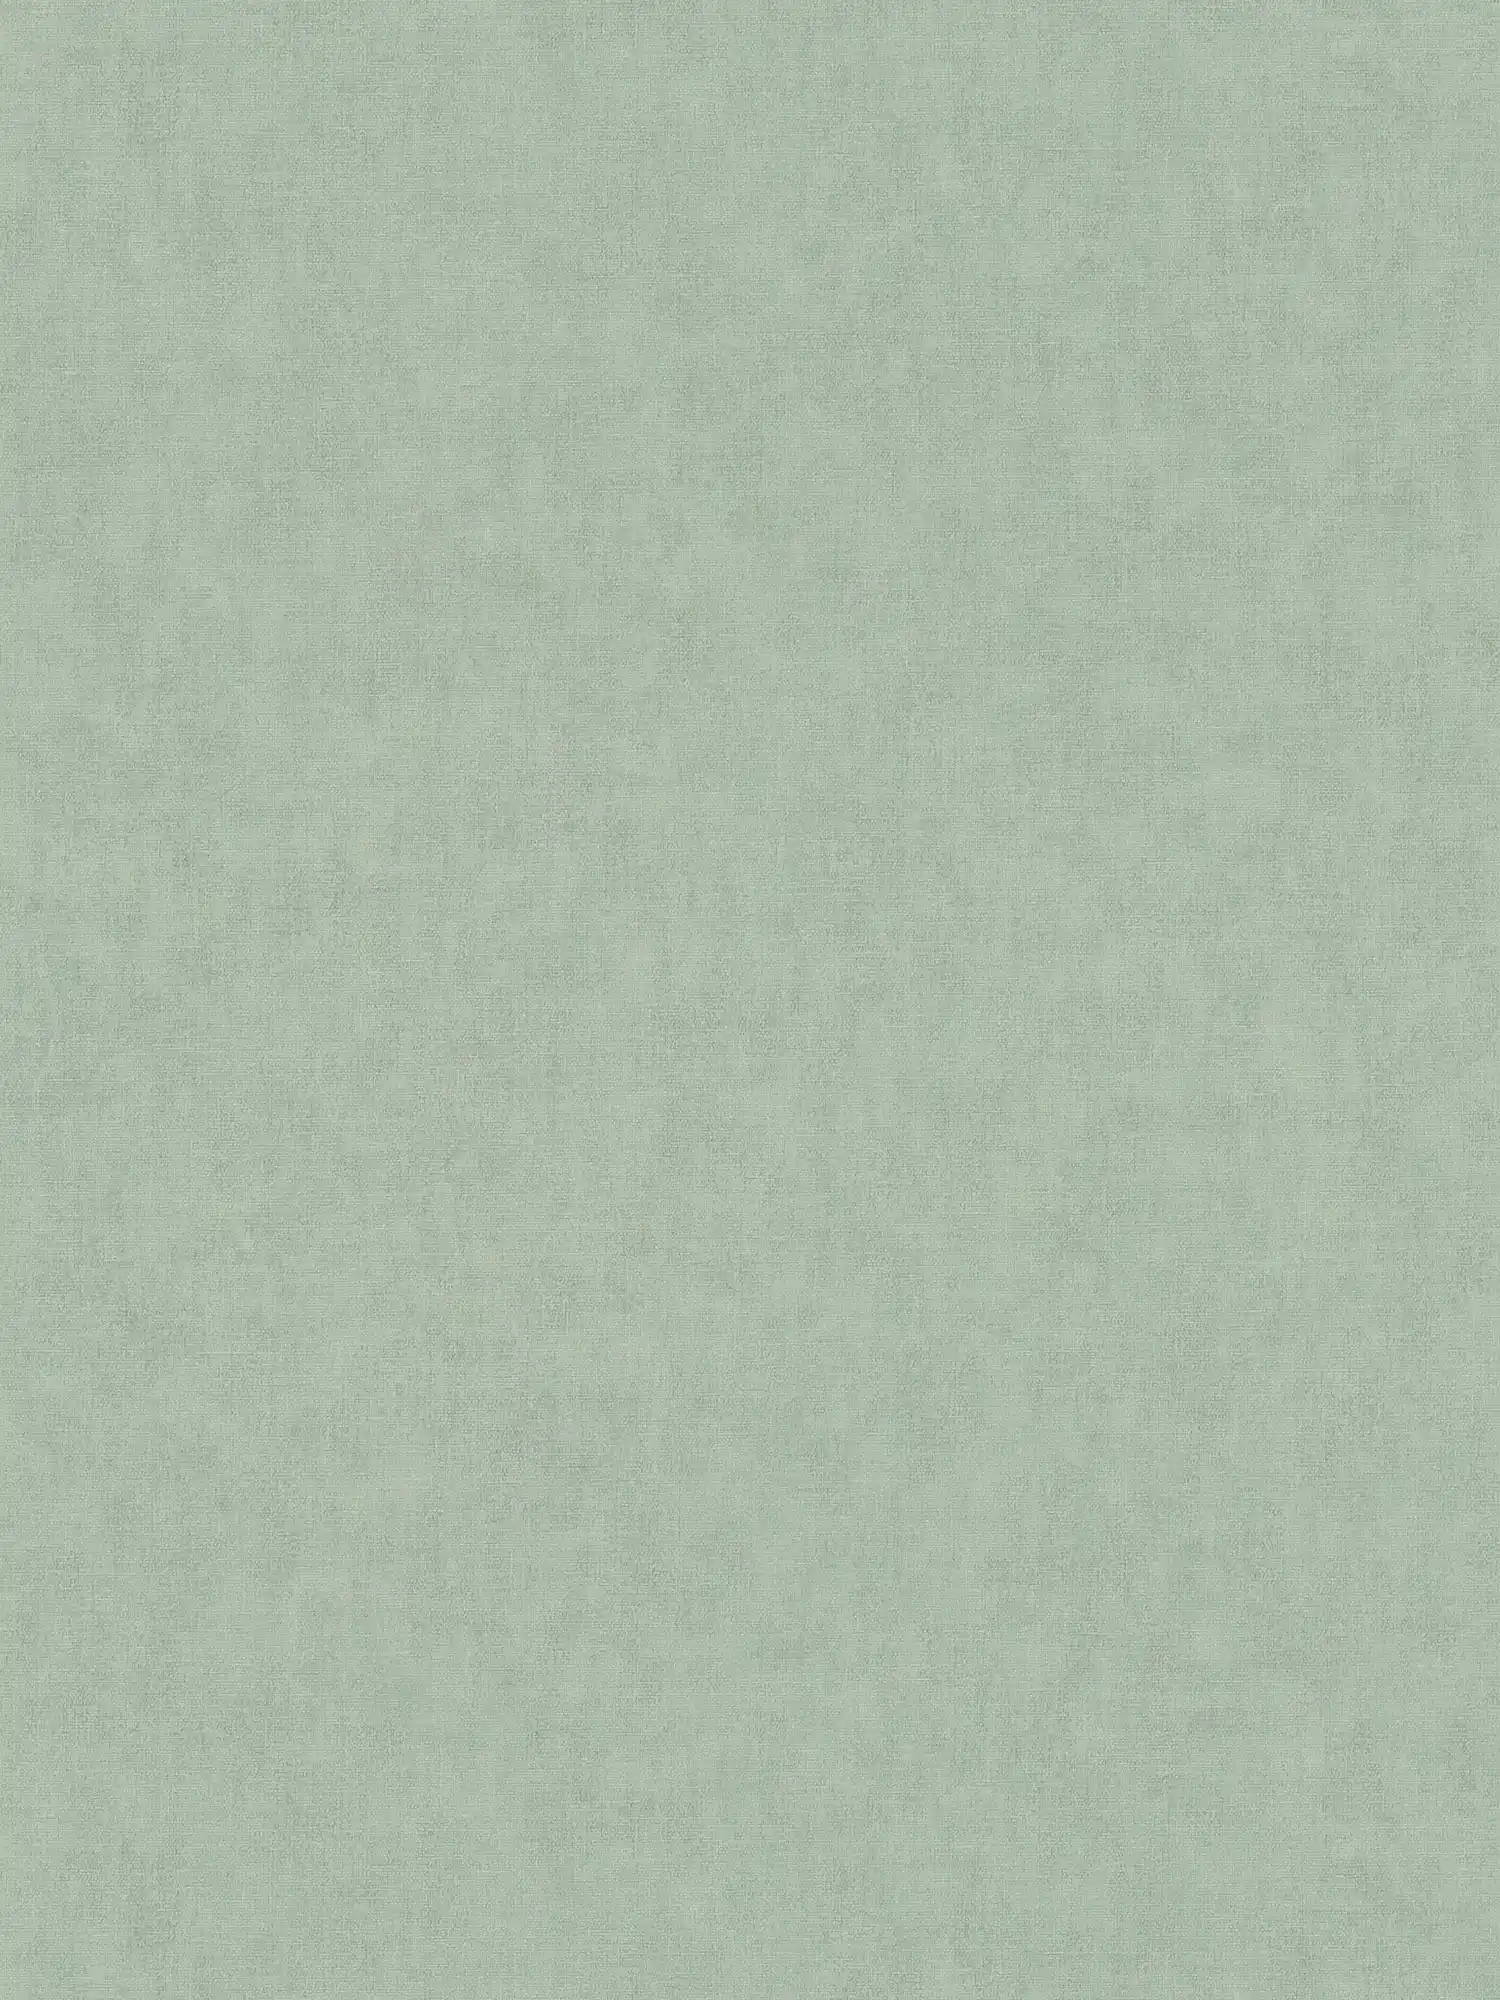 Non-woven wallpaper textile look Scandinavian style - grey, green
